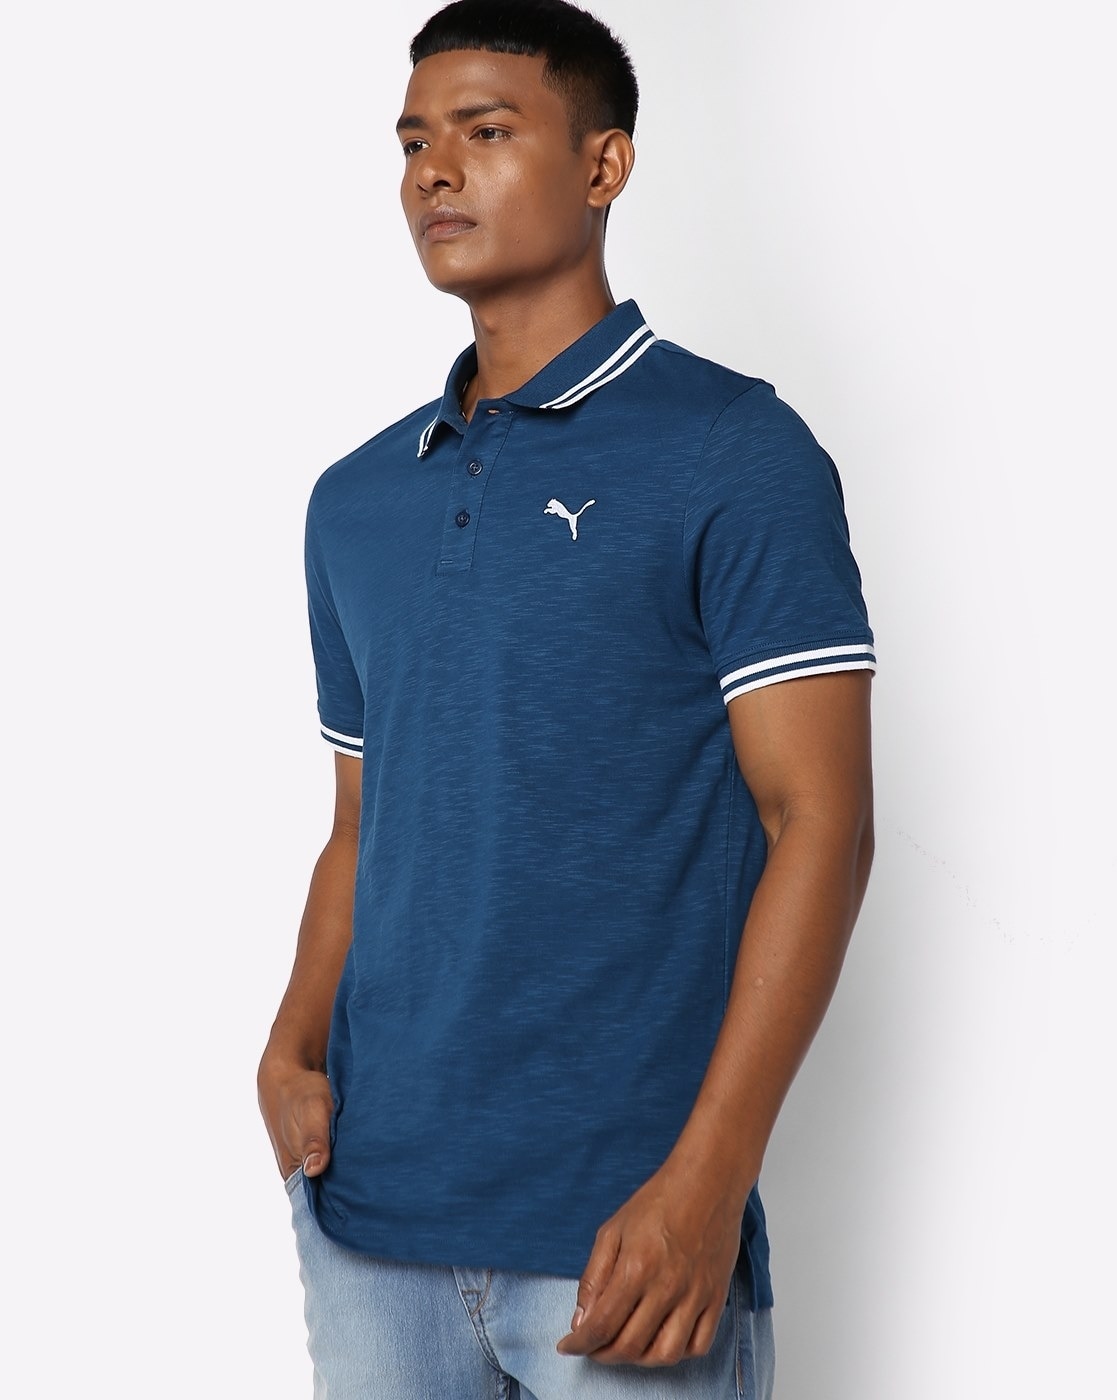 Identitet skak Kalksten Buy Blue Tshirts for Men by Puma Online | Ajio.com